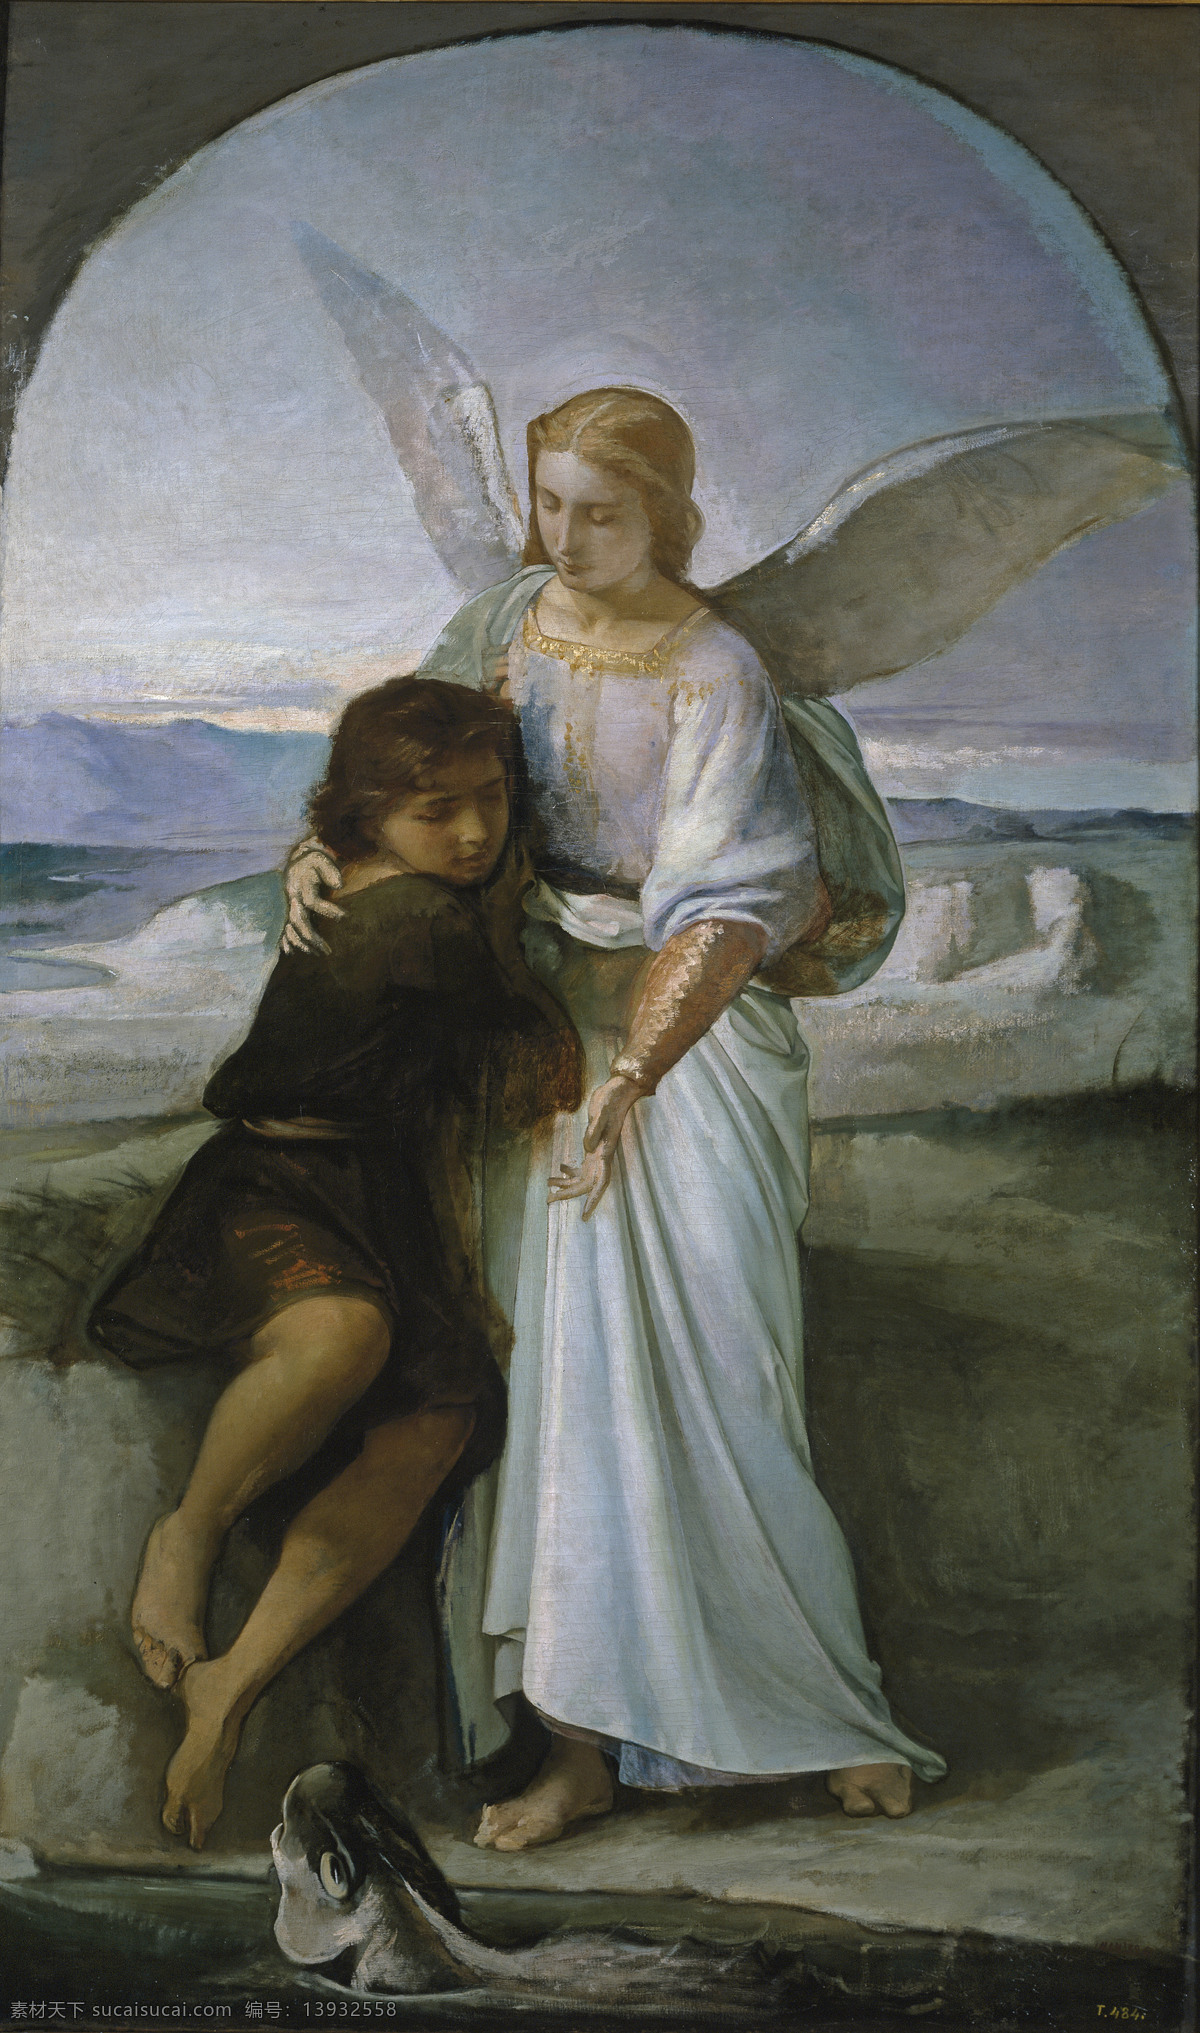 天使的爱抚 小男孩儿 天使 海边 悲伤 安慰 19世纪油画 油画 绘画书法 文化艺术